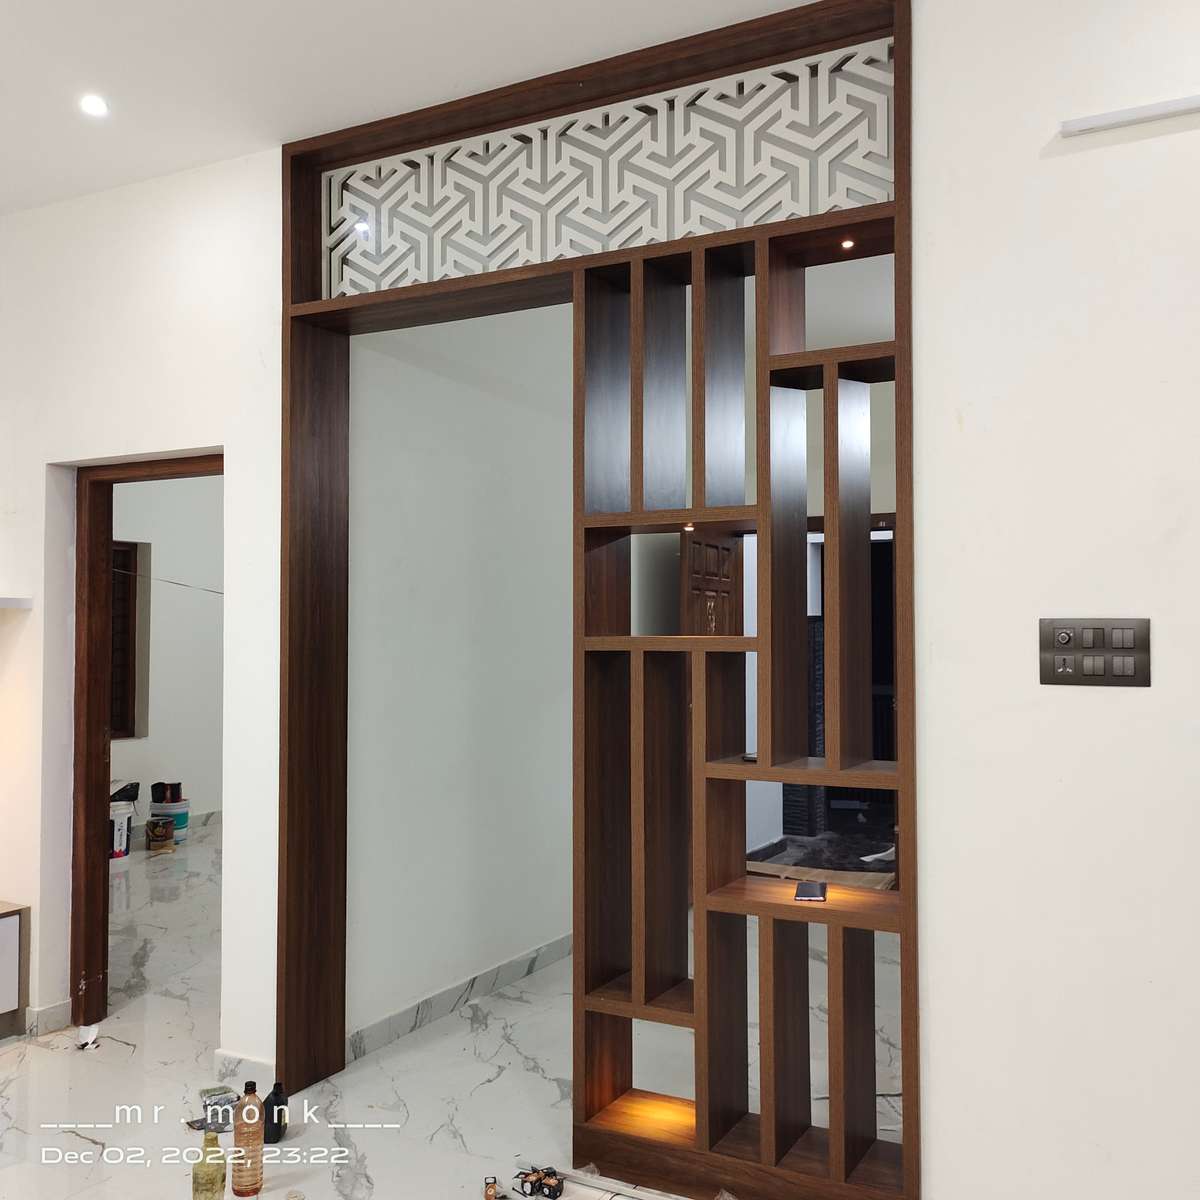 Designs by Interior Designer SREESNEHA INTERIORS, Kottayam | Kolo